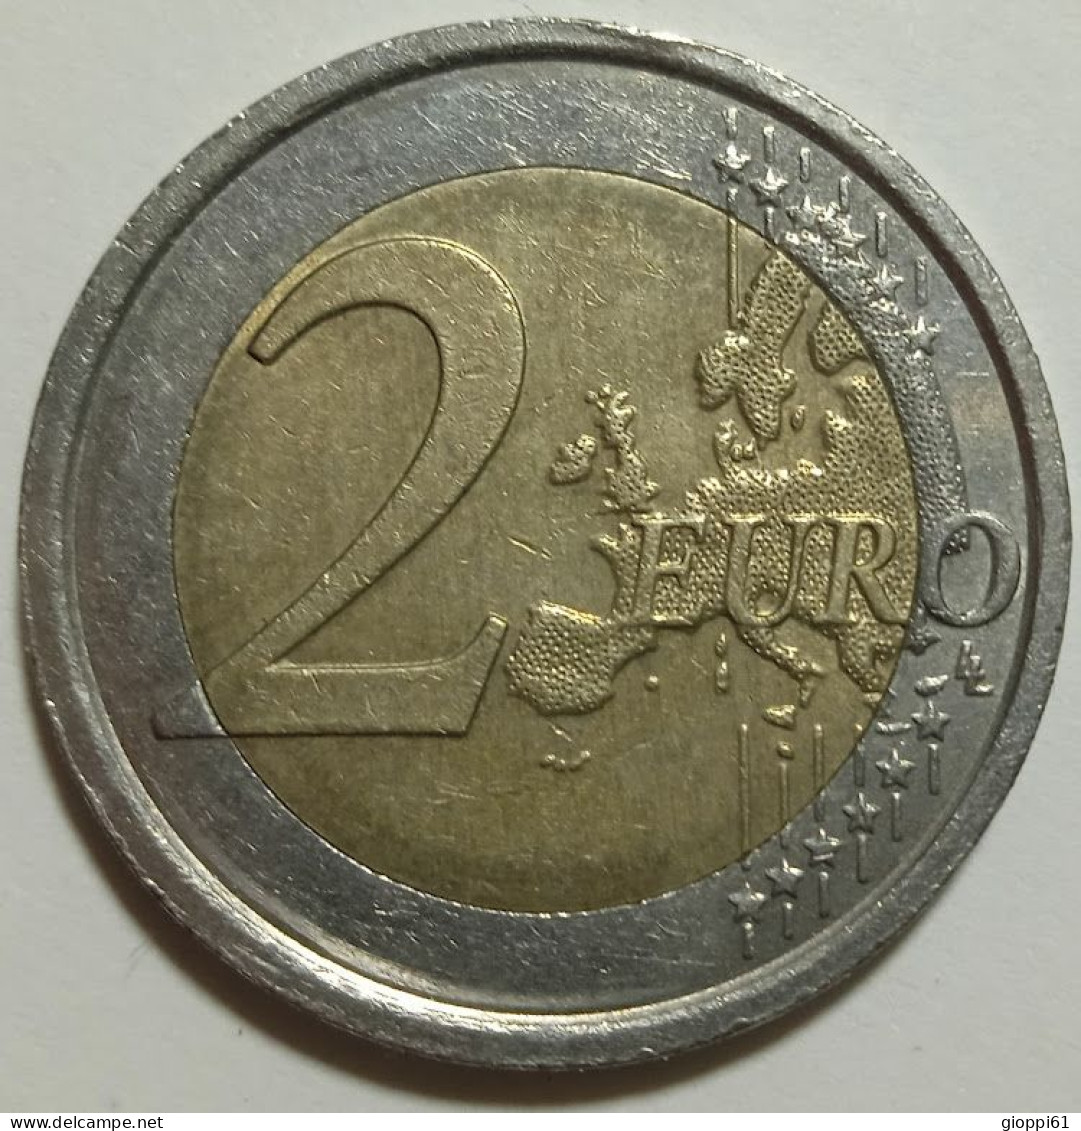 2016 Italia - Plauto 2 Euro (circolata) - Italia